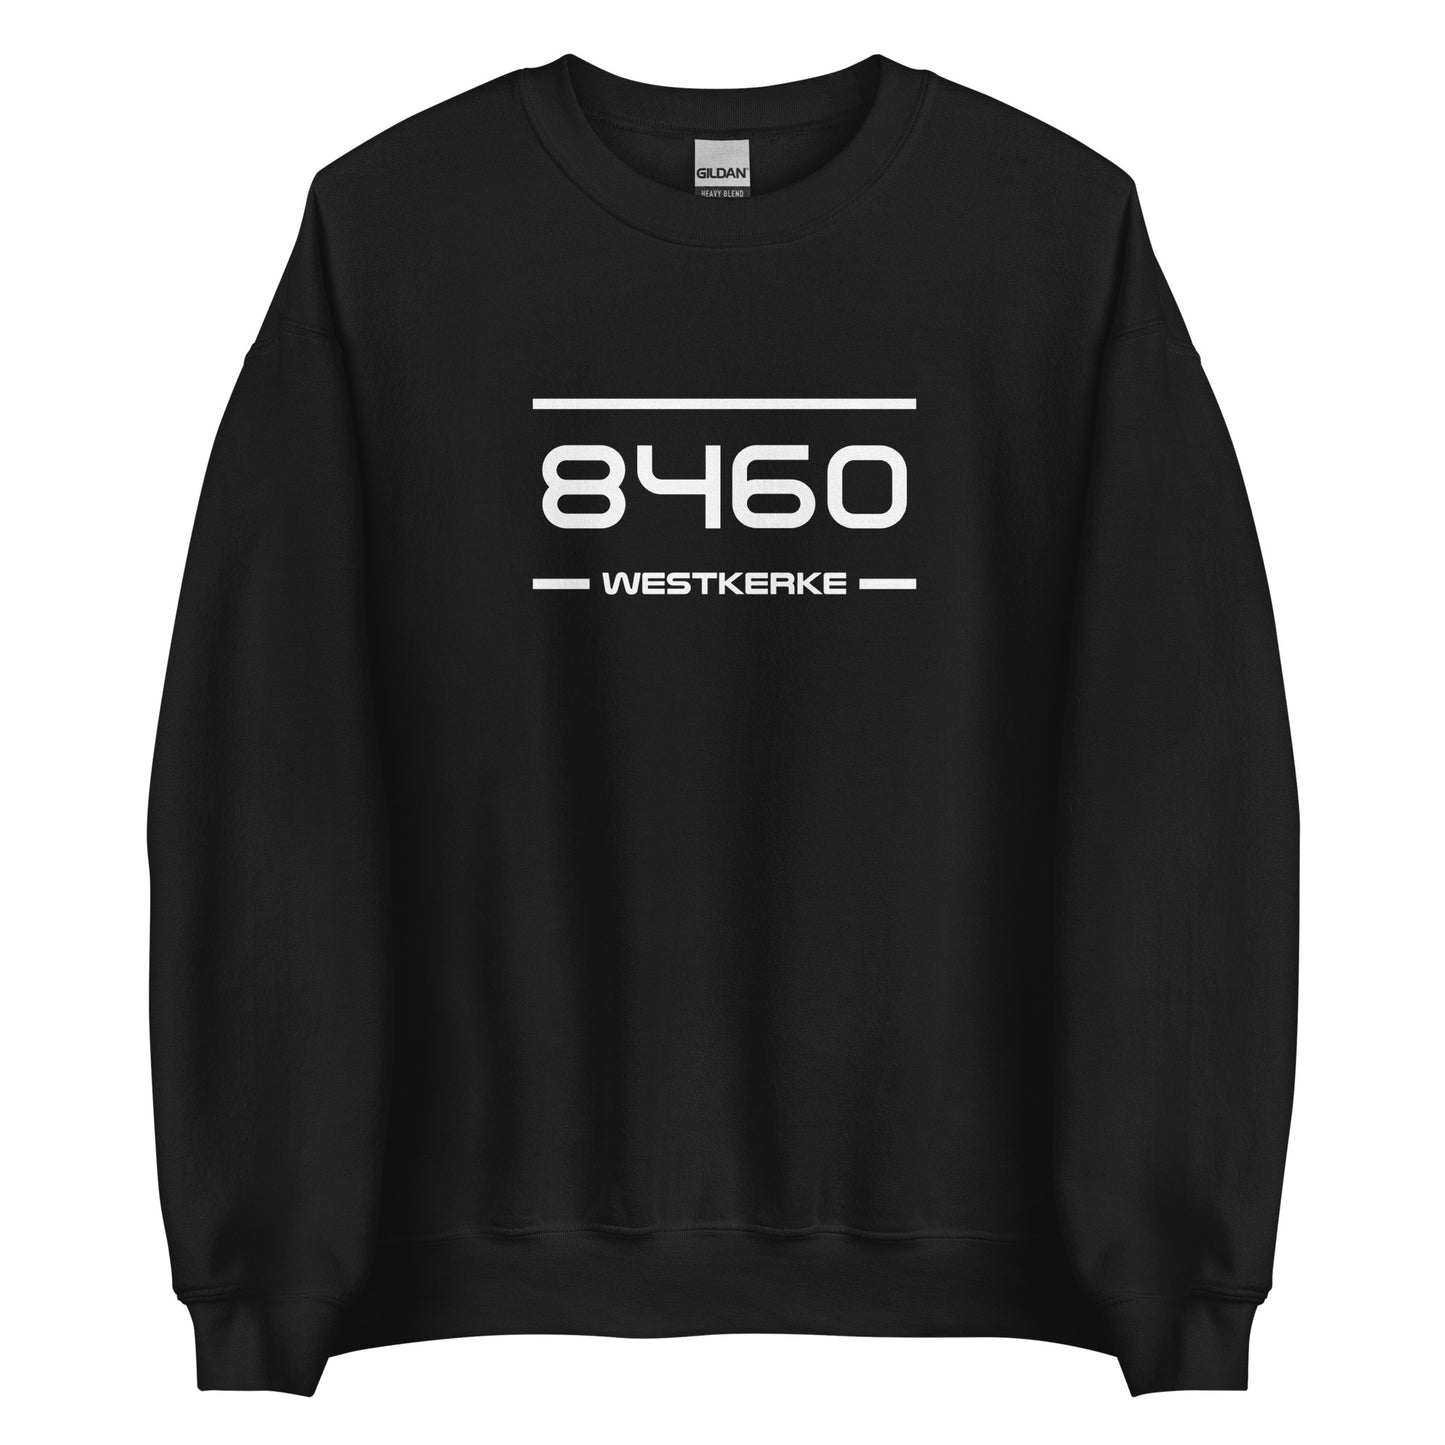 Sweater - 8460 - Westkerke (M/V)